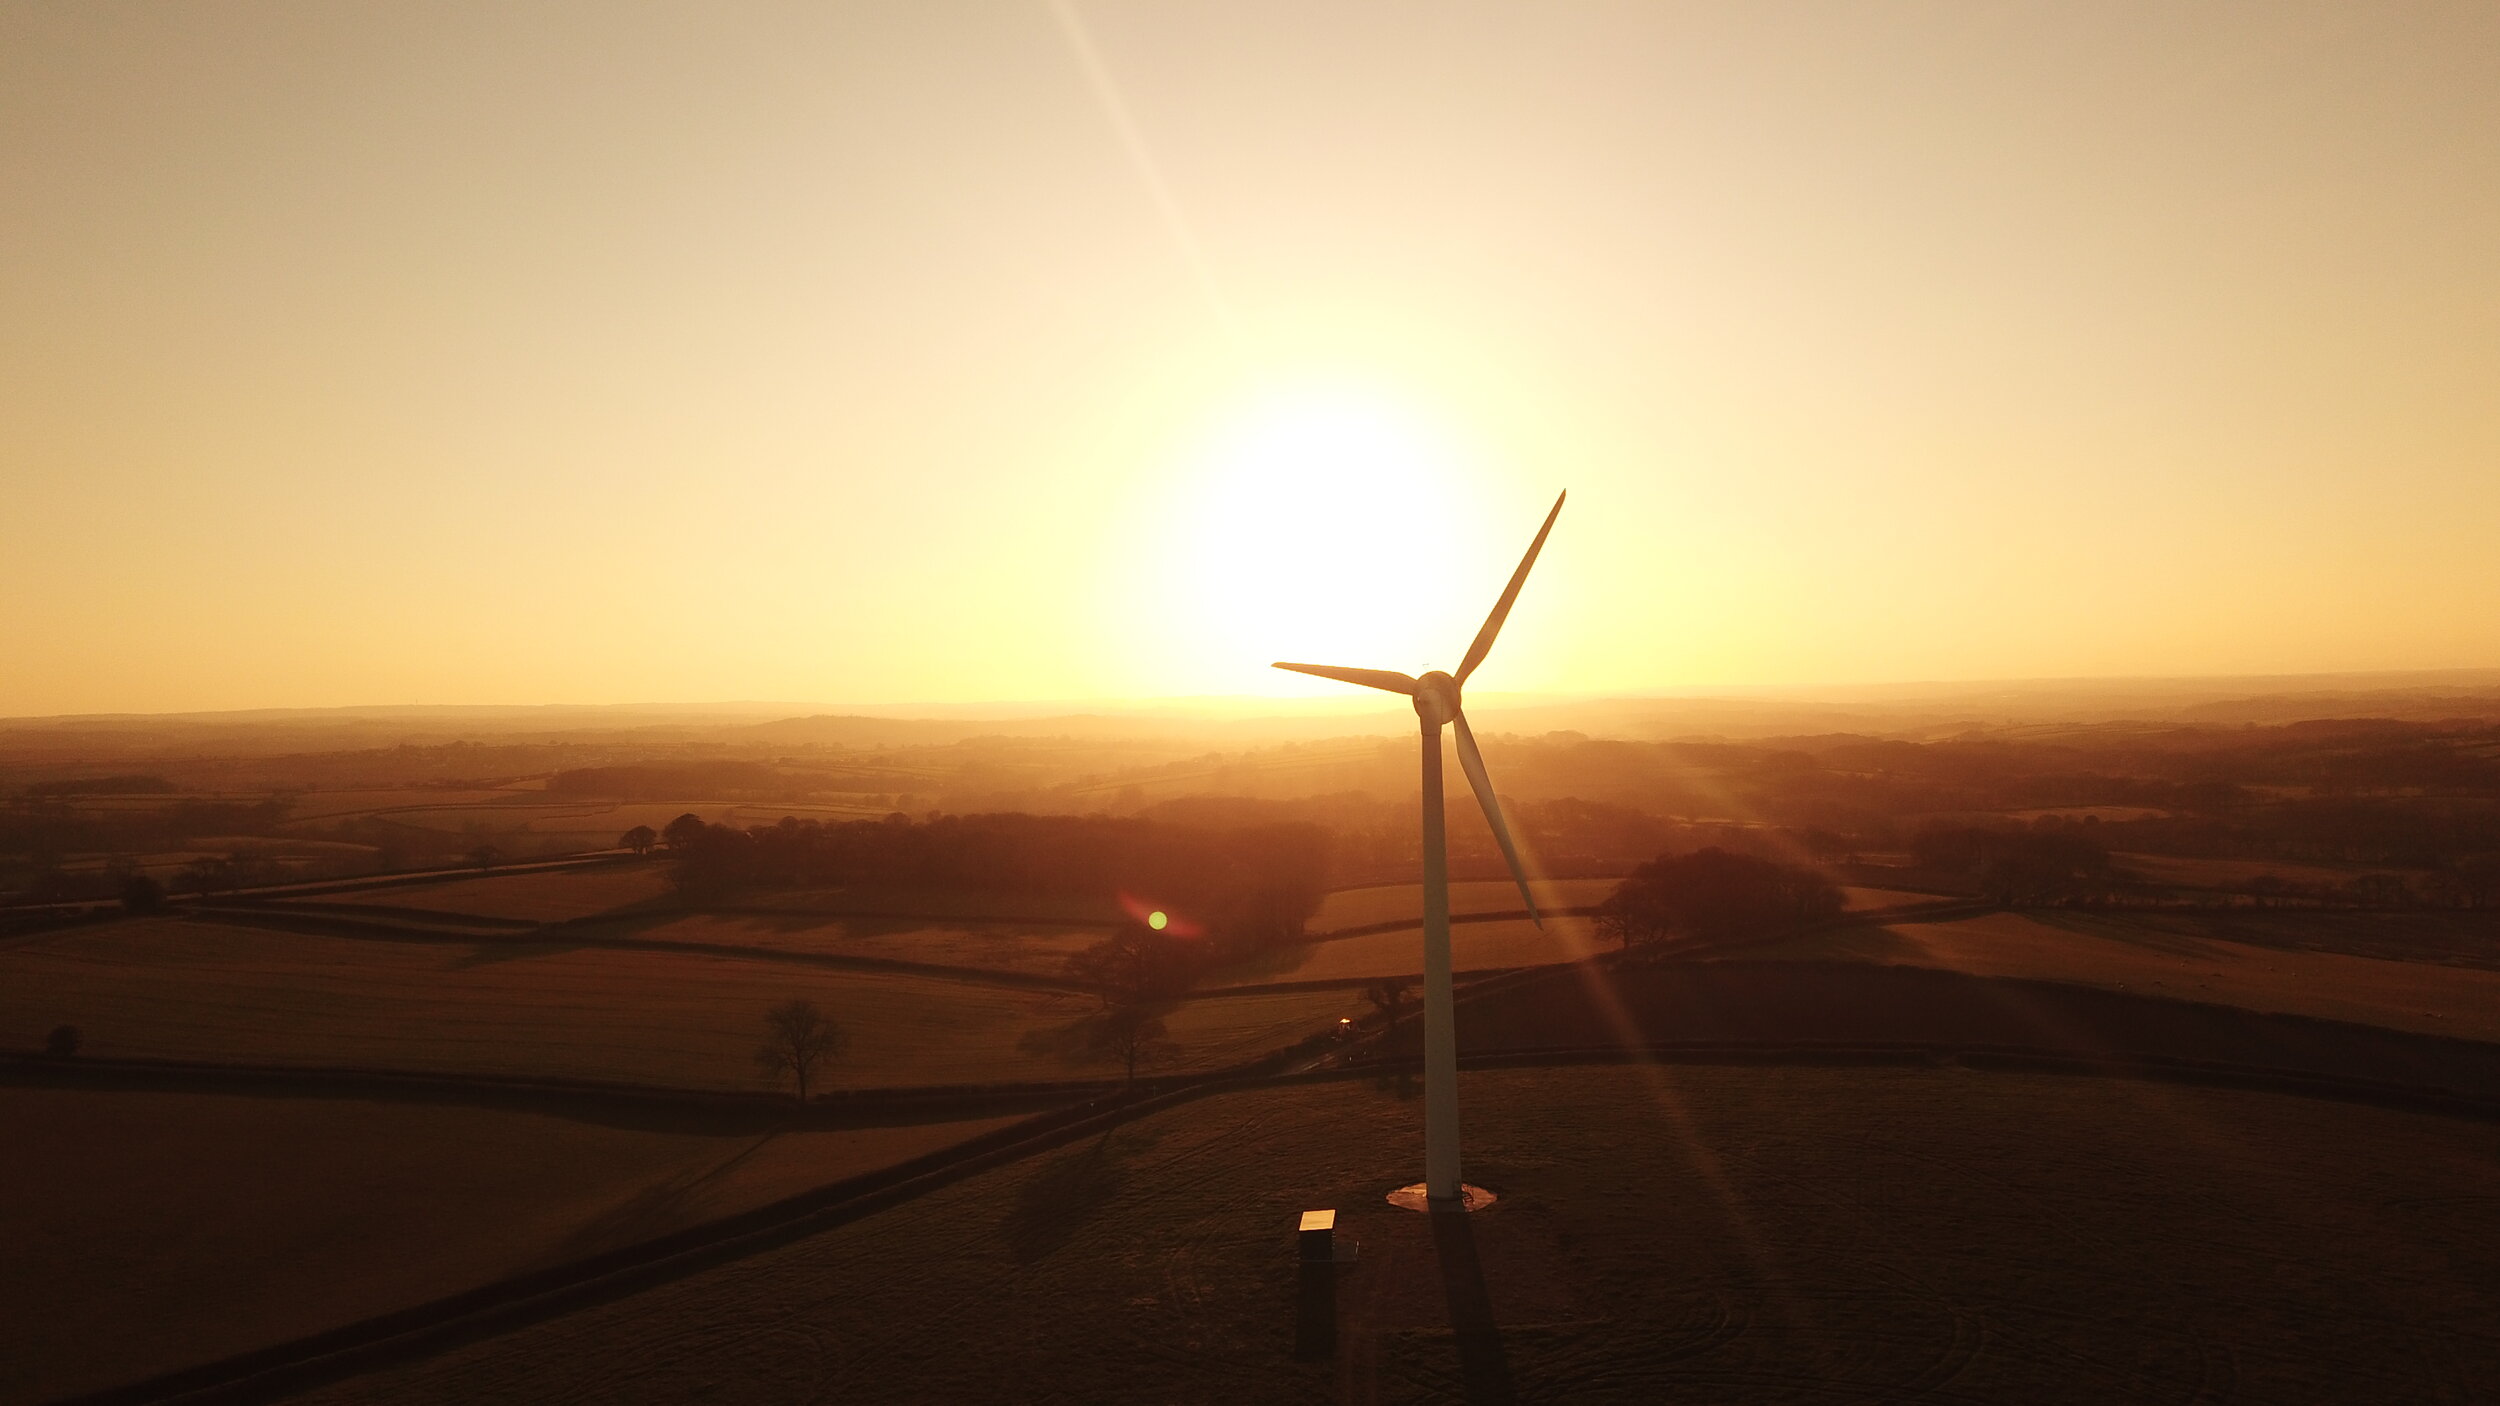 Wind turbine - North Devon - UK